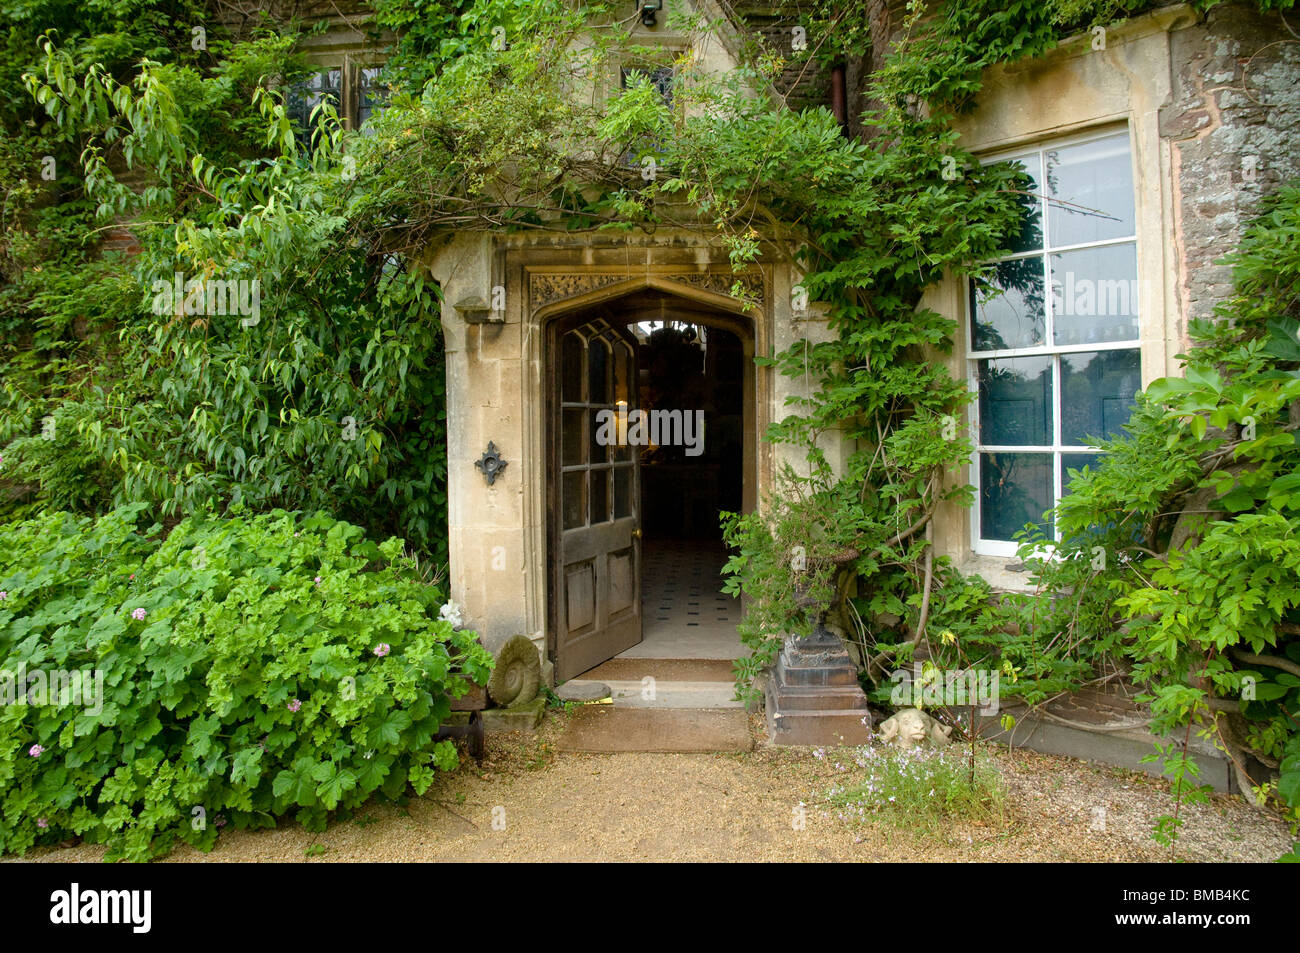 Veranda mit offener Tür; an jüngere Hof Haus und Garten. Bergsteiger, einschließlich Wisteria gibt es zuhauf. Cotswolds, UK Stockfoto